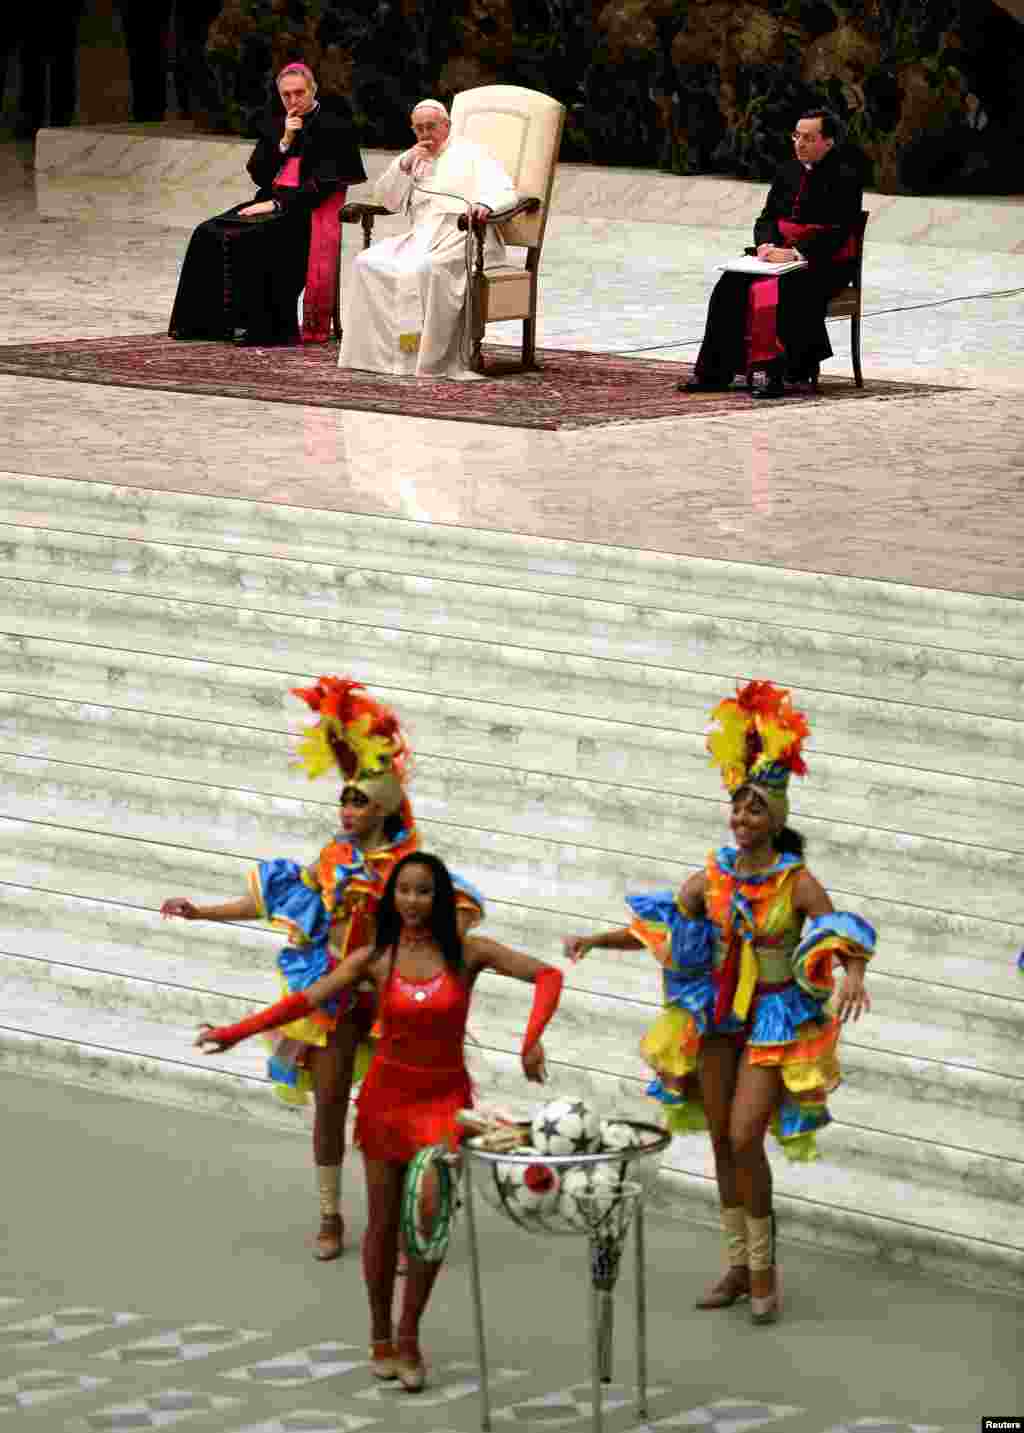 ВАТИКАН - Бразилски танчерки настапуваат пред папата Франциск, за време на главната аудиенција во катедралата Павле Шести, пред католичкиот Божиќ. Поглаварот на римокатоличката црква е во постојана служба по повод претстојните божиќни празници и секоја миса ја користи за да повика да престанат воените конфликти и насилство во светот.